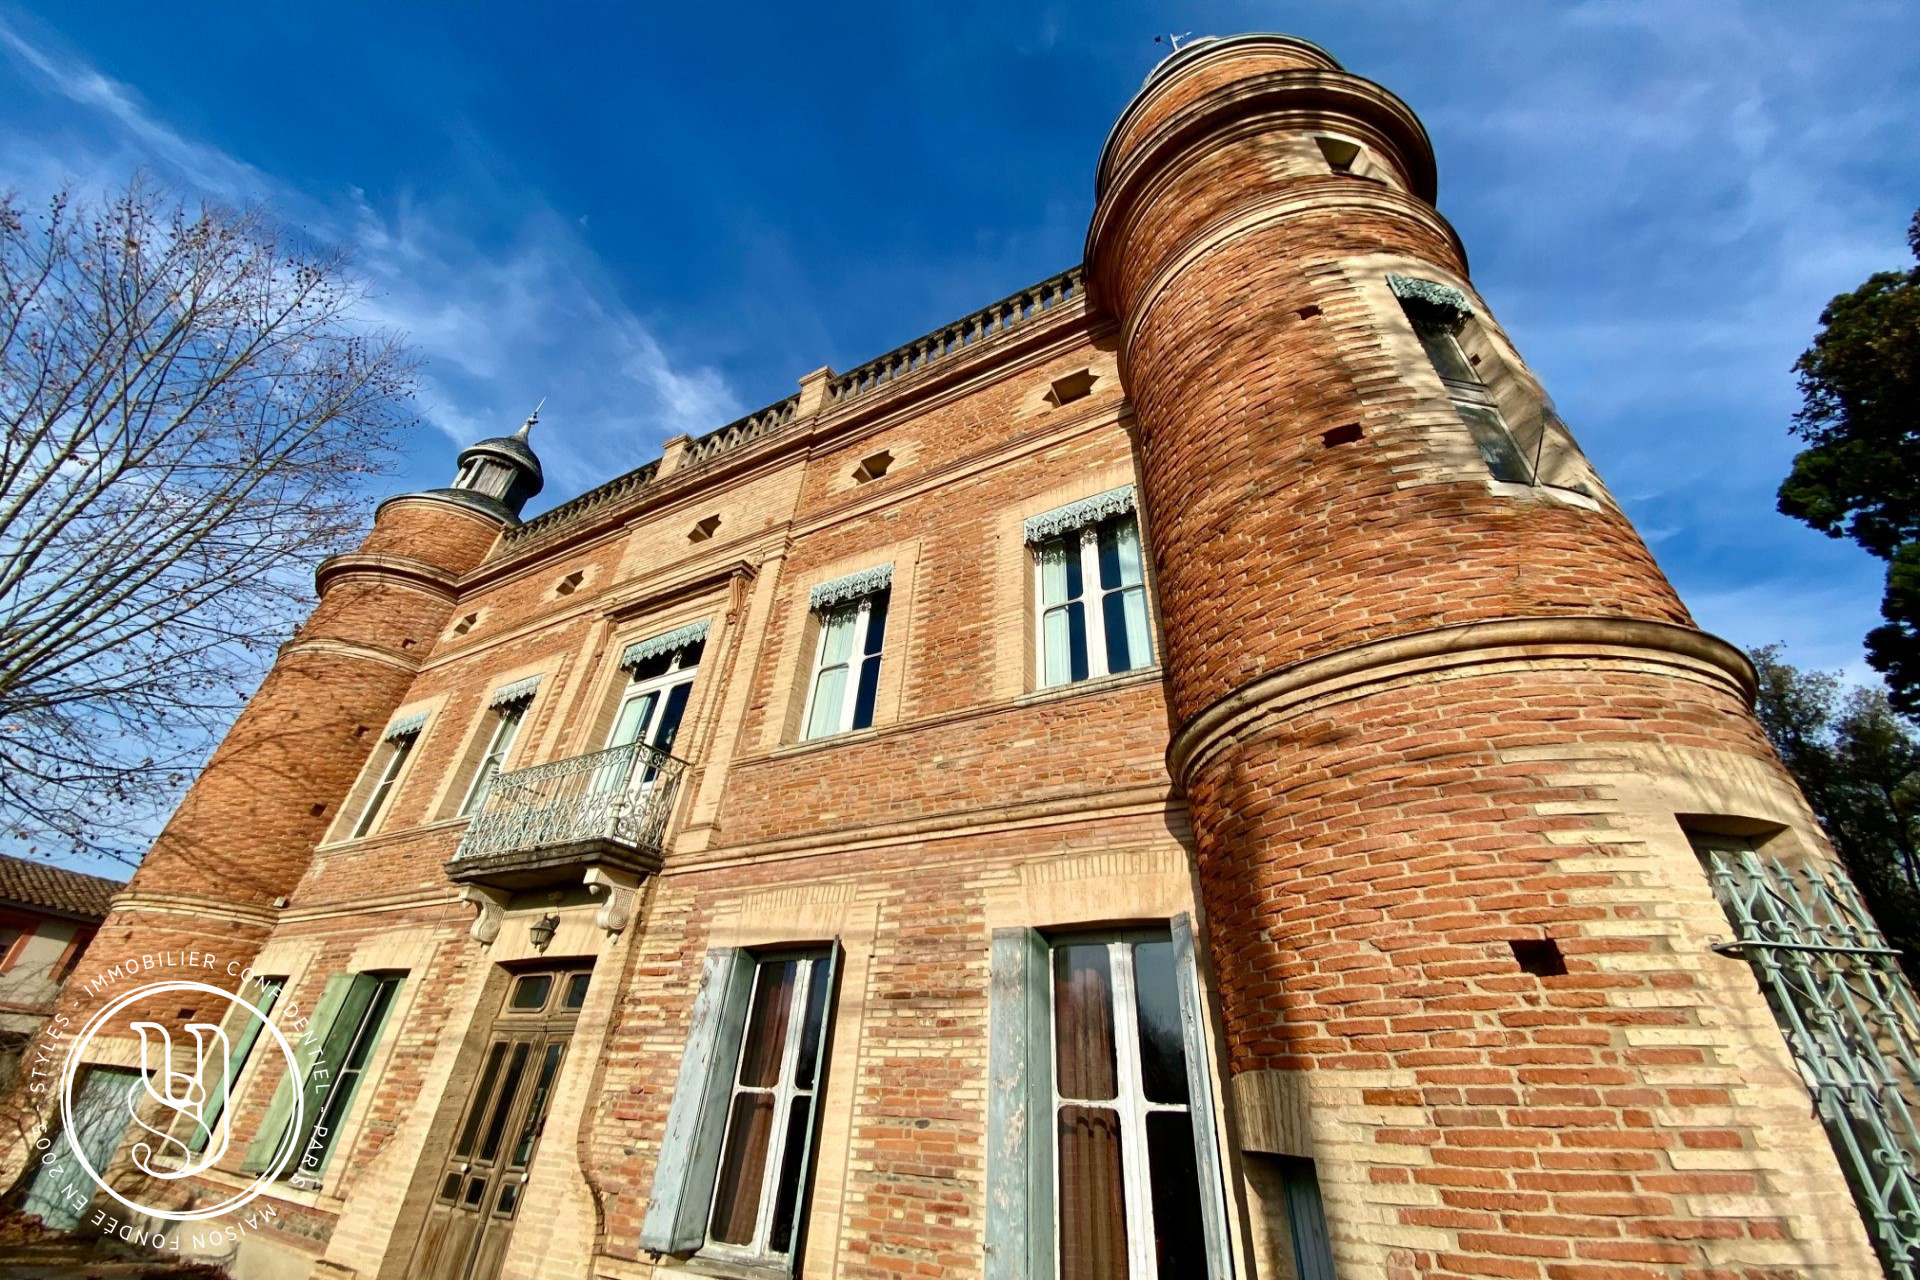 Toulouse - Vendu par Styles - Comme un petit château - image 8